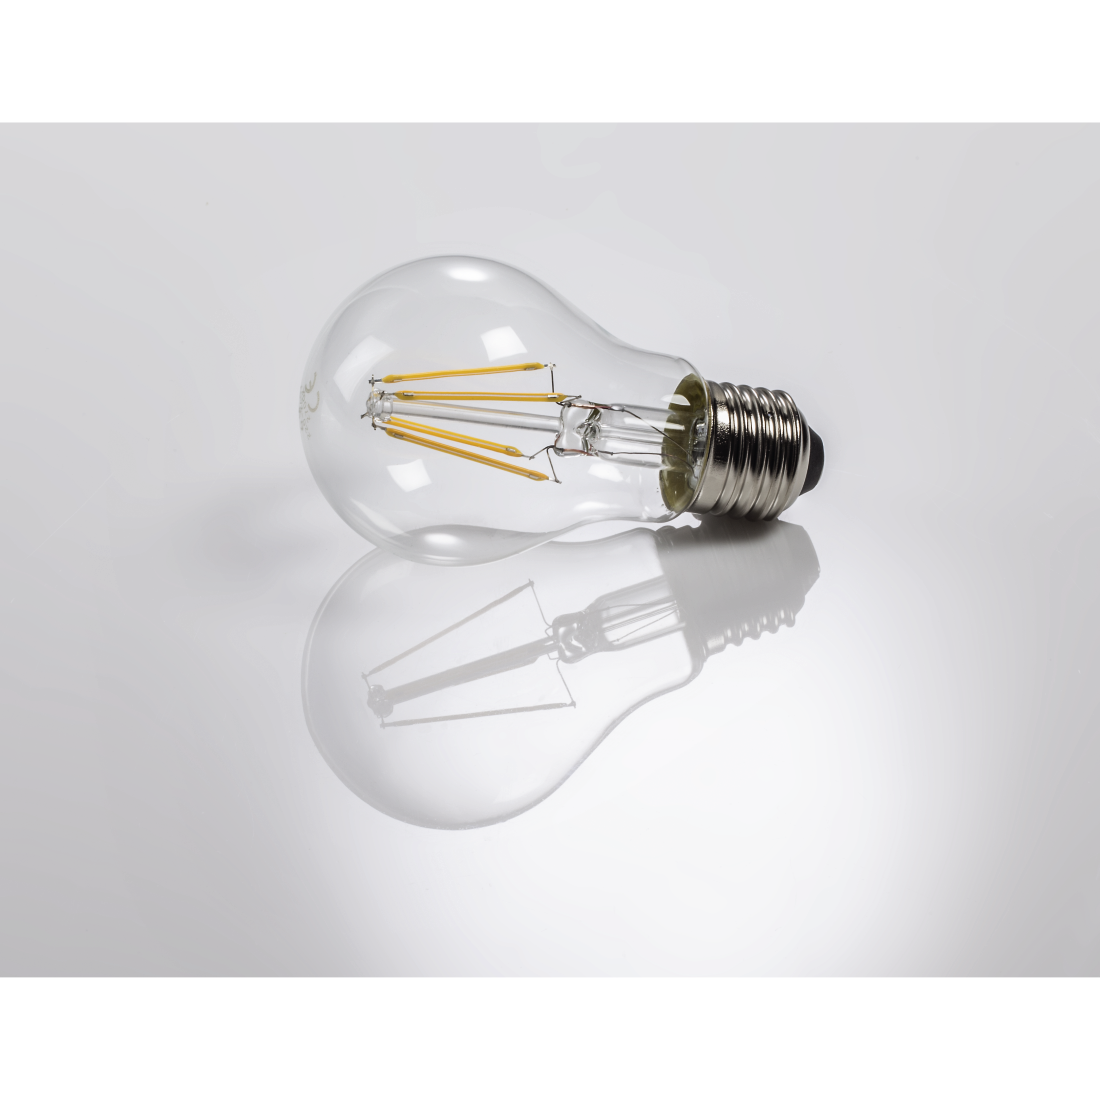 abx3 High-Res Image 3 - Xavax, Ampoule filament LED, E27, 470lm rempl. ampoule incand., 40W, blc chd